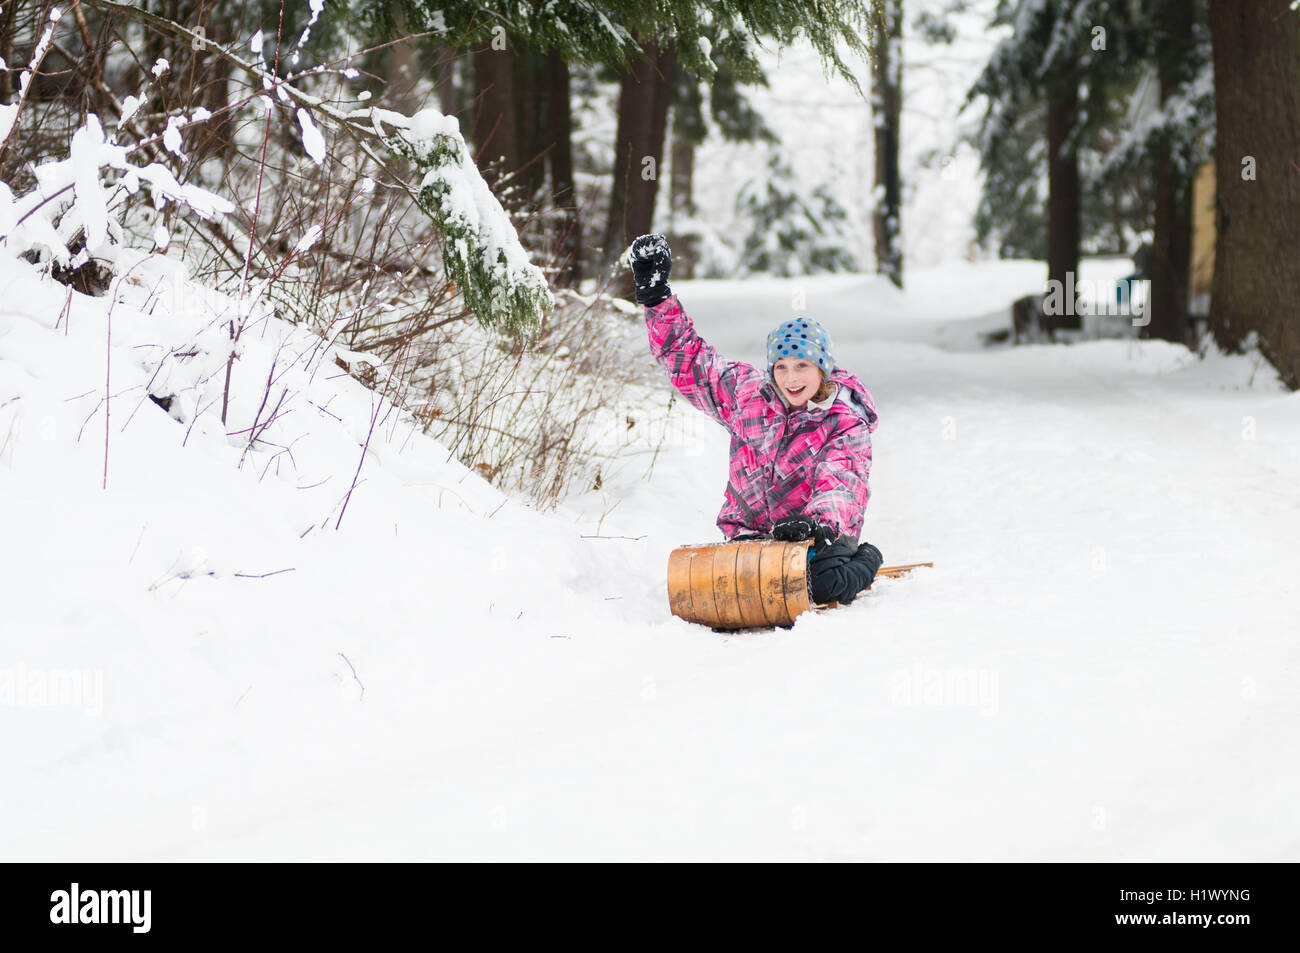 Mädchen einen Schnee bedeckten Hügel hinunter auf einen alten hölzernen Schlitten Rodeln Stockfoto